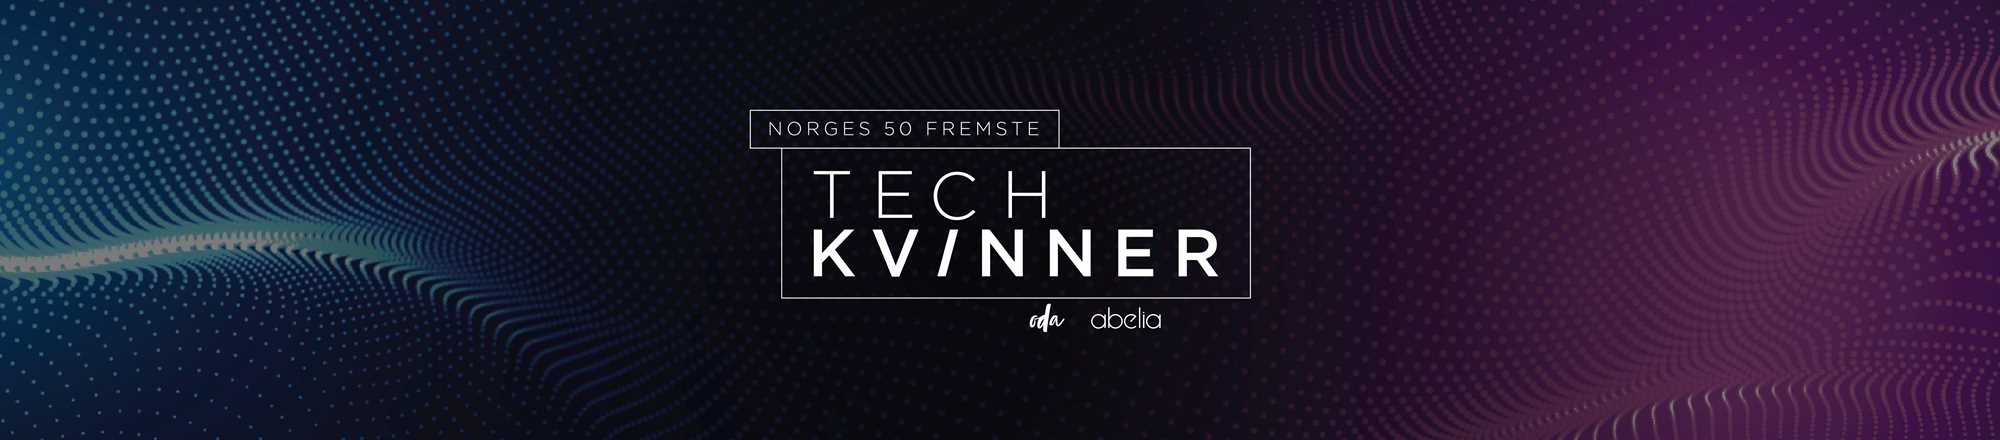 Grafikk for norges 50 fremste tech-kvinner